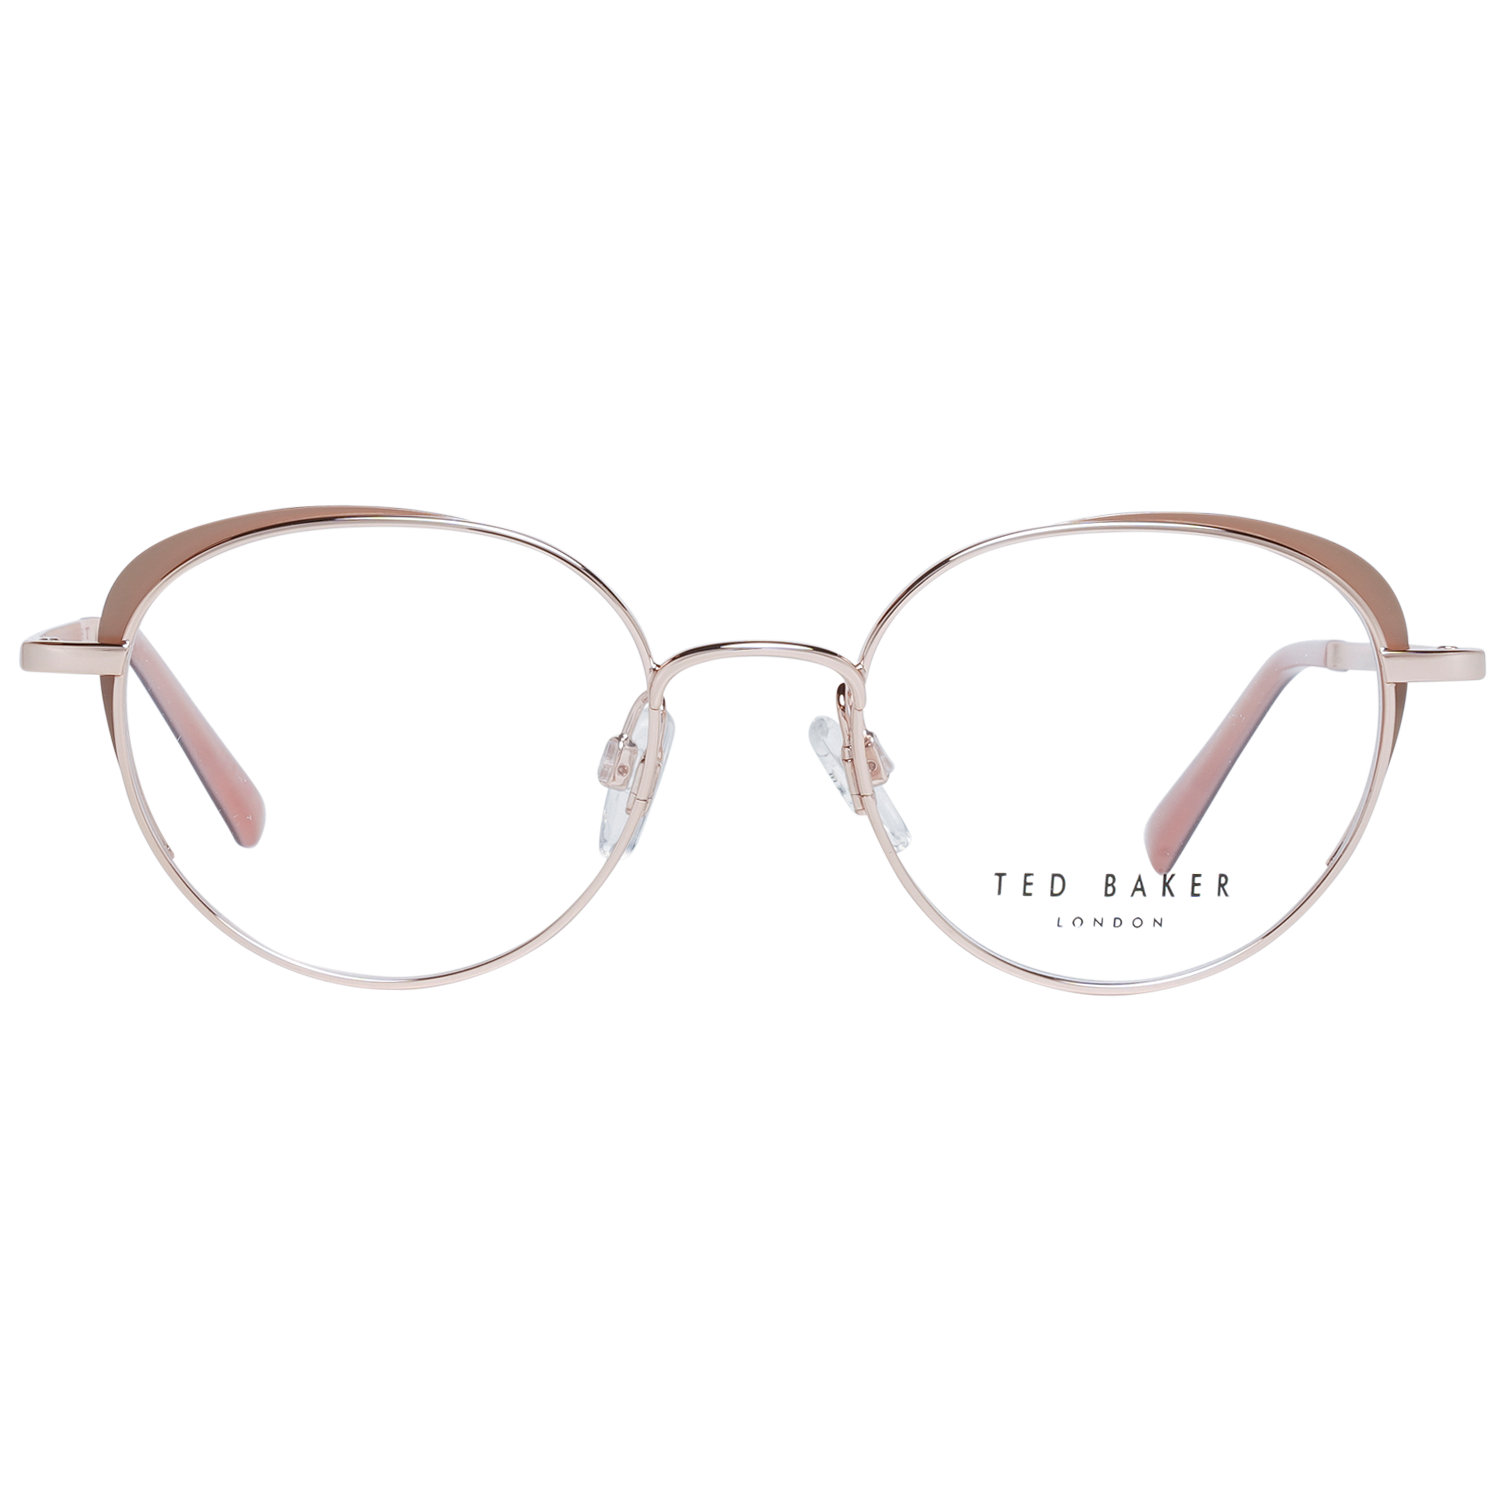 Ted Baker Frames Ted Baker Optical Frame Prescription GlassesTB2274 114 48 Eyeglasses Eyewear UK USA Australia 